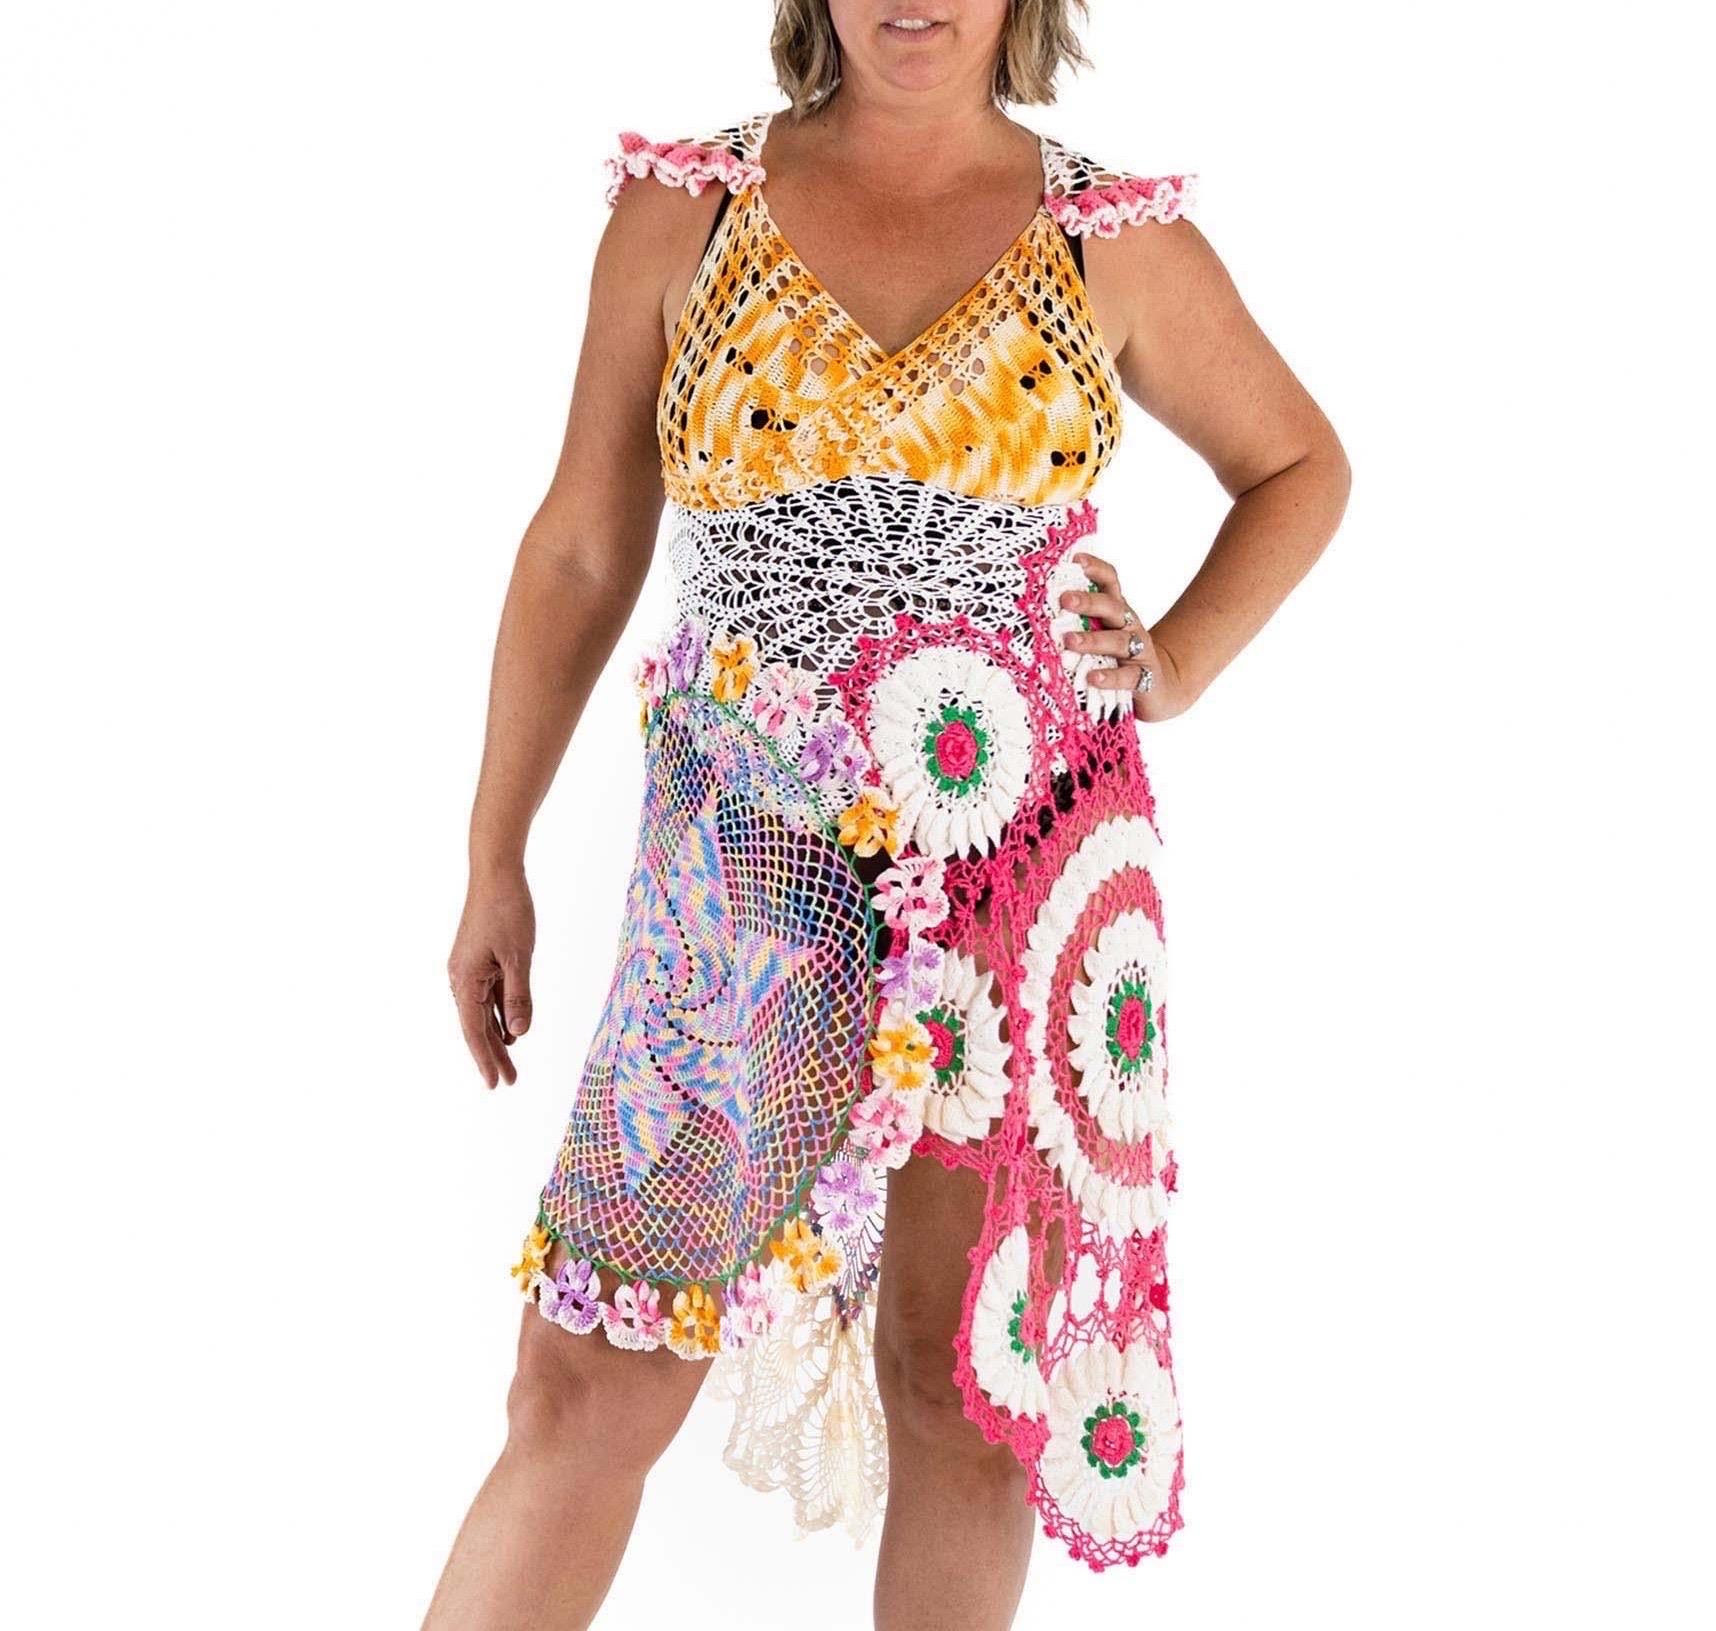 Morphew Collection Multicolor Cotton Crochet Long Vintage Doily Dress large For Sale 2